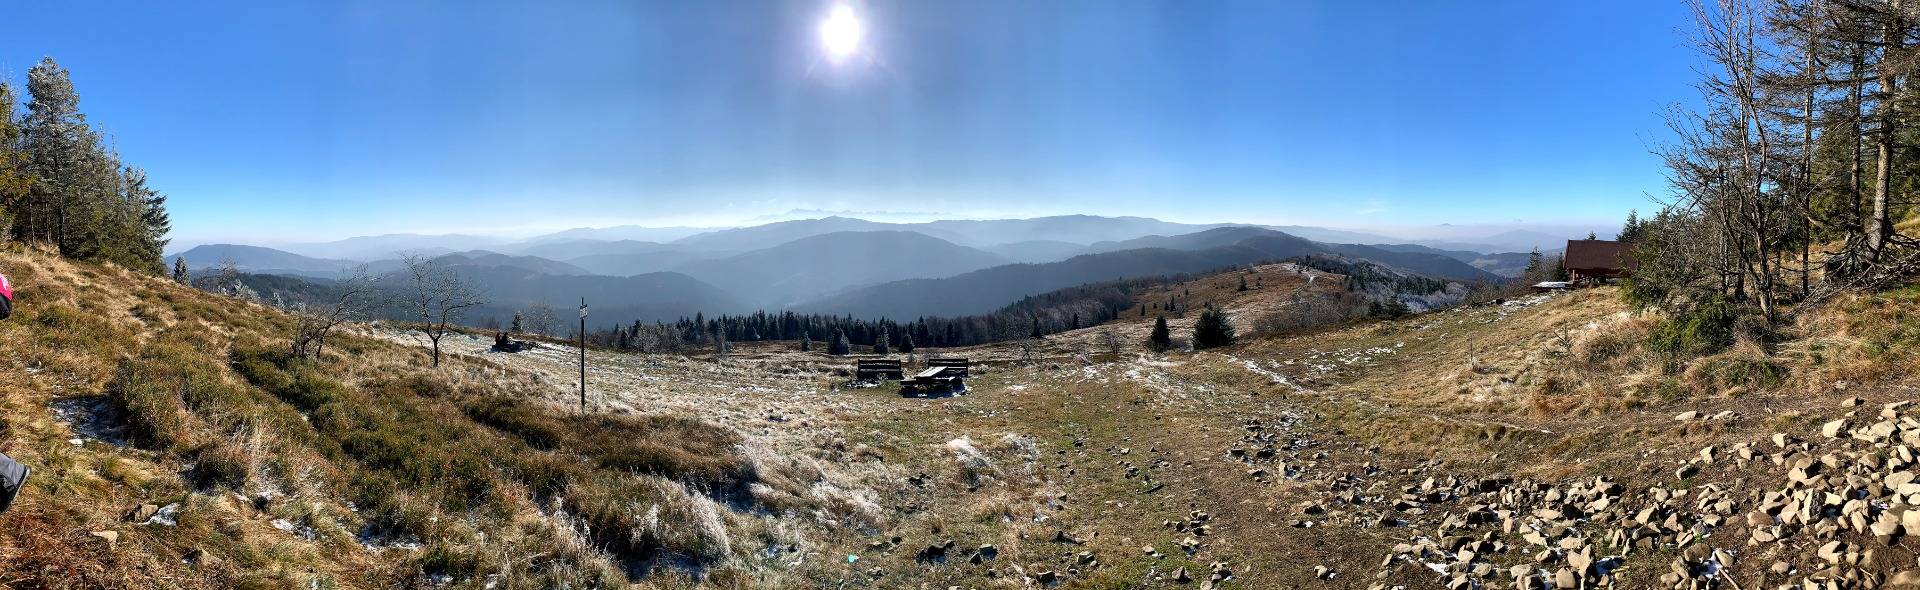 The Year of 1000km Hiked in Mountains / Rok  1000km górskich wędrówek (EN/PL)